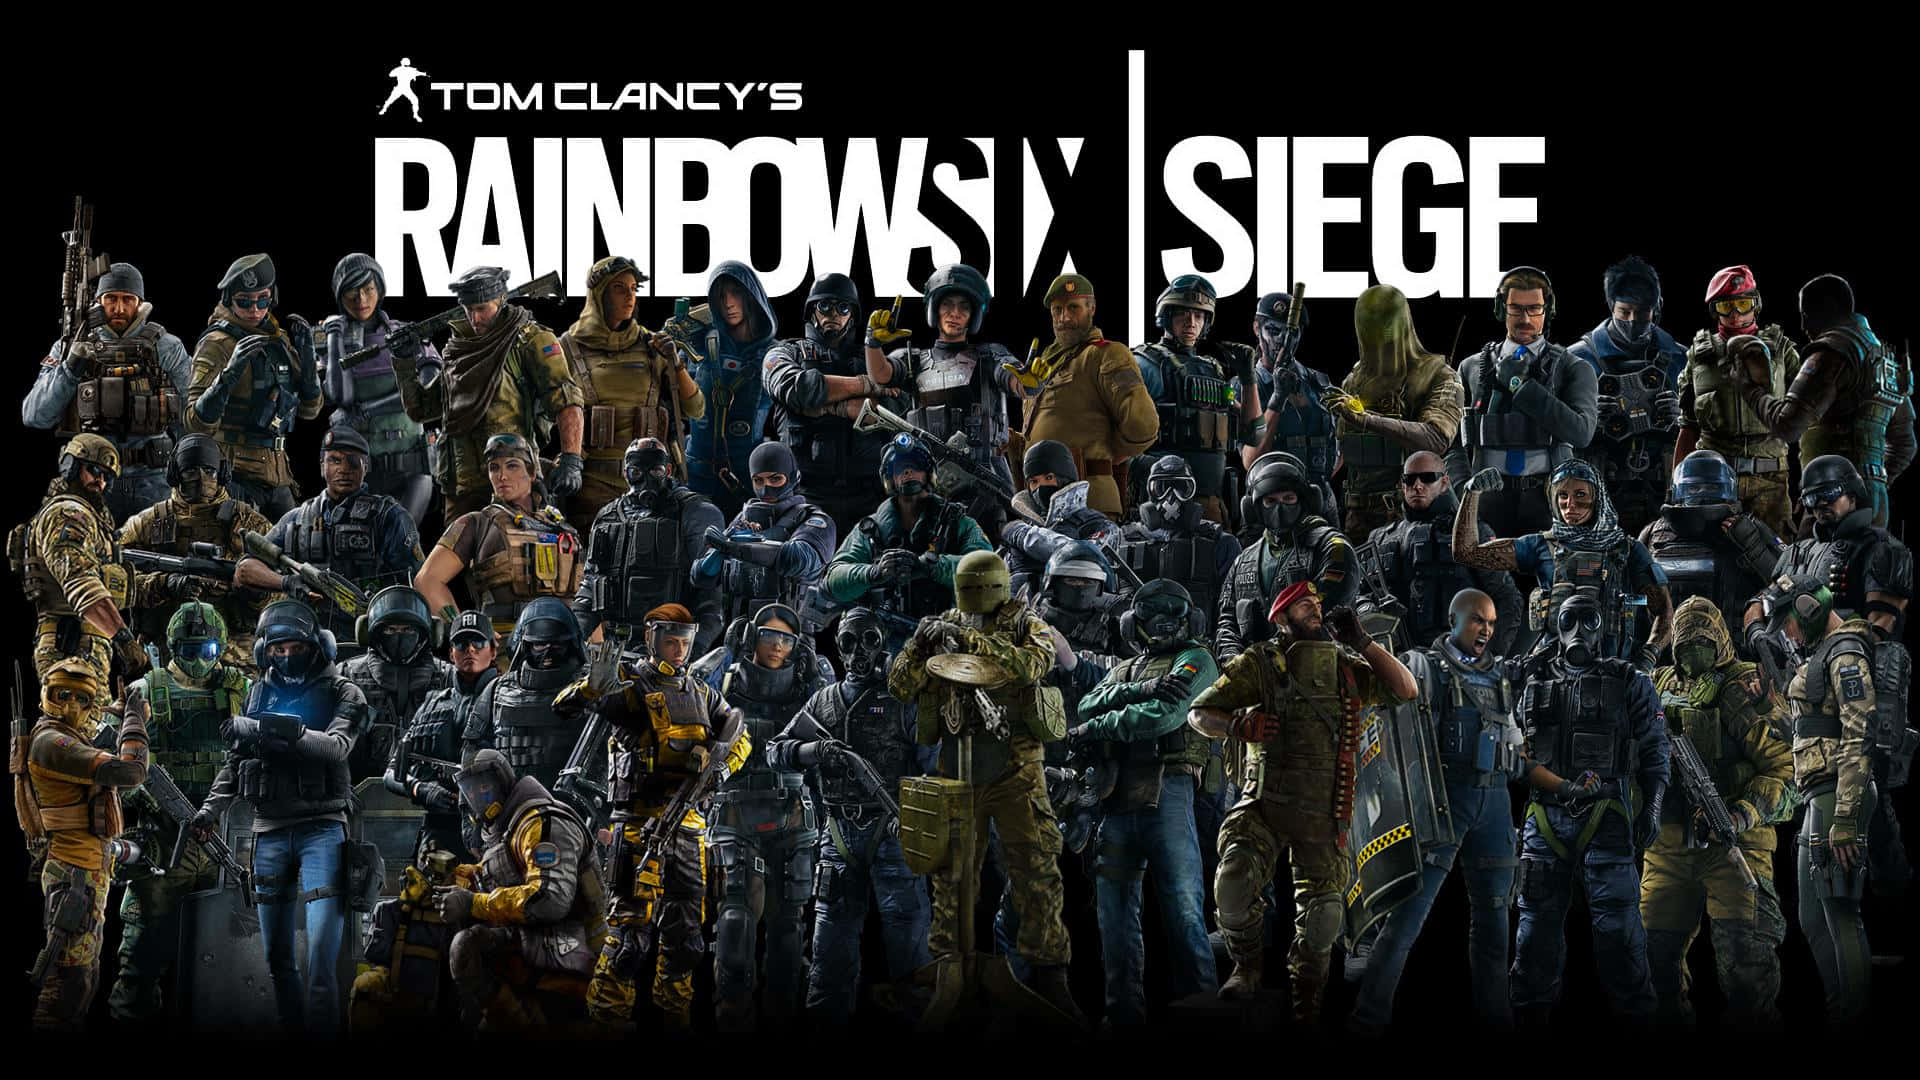 Elite Rainbow Six Siege Operators in action Wallpaper